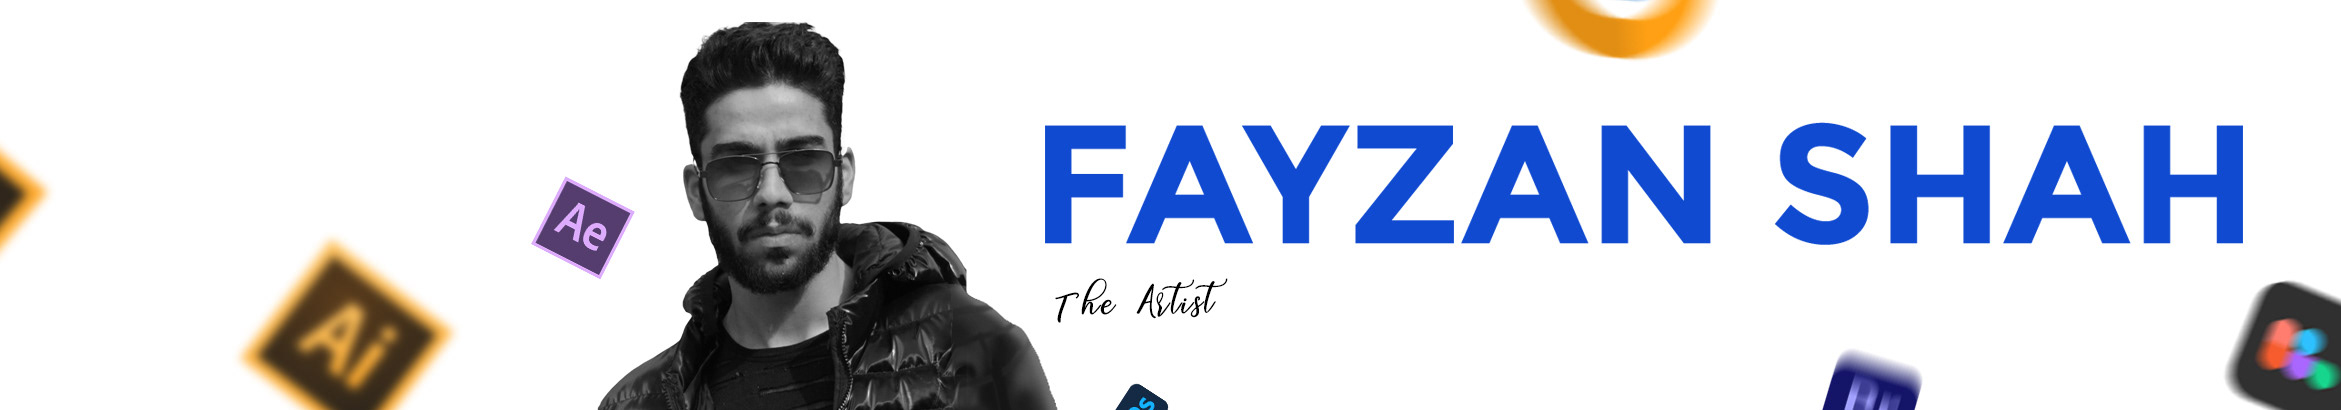 Fayzan Shah's profile banner